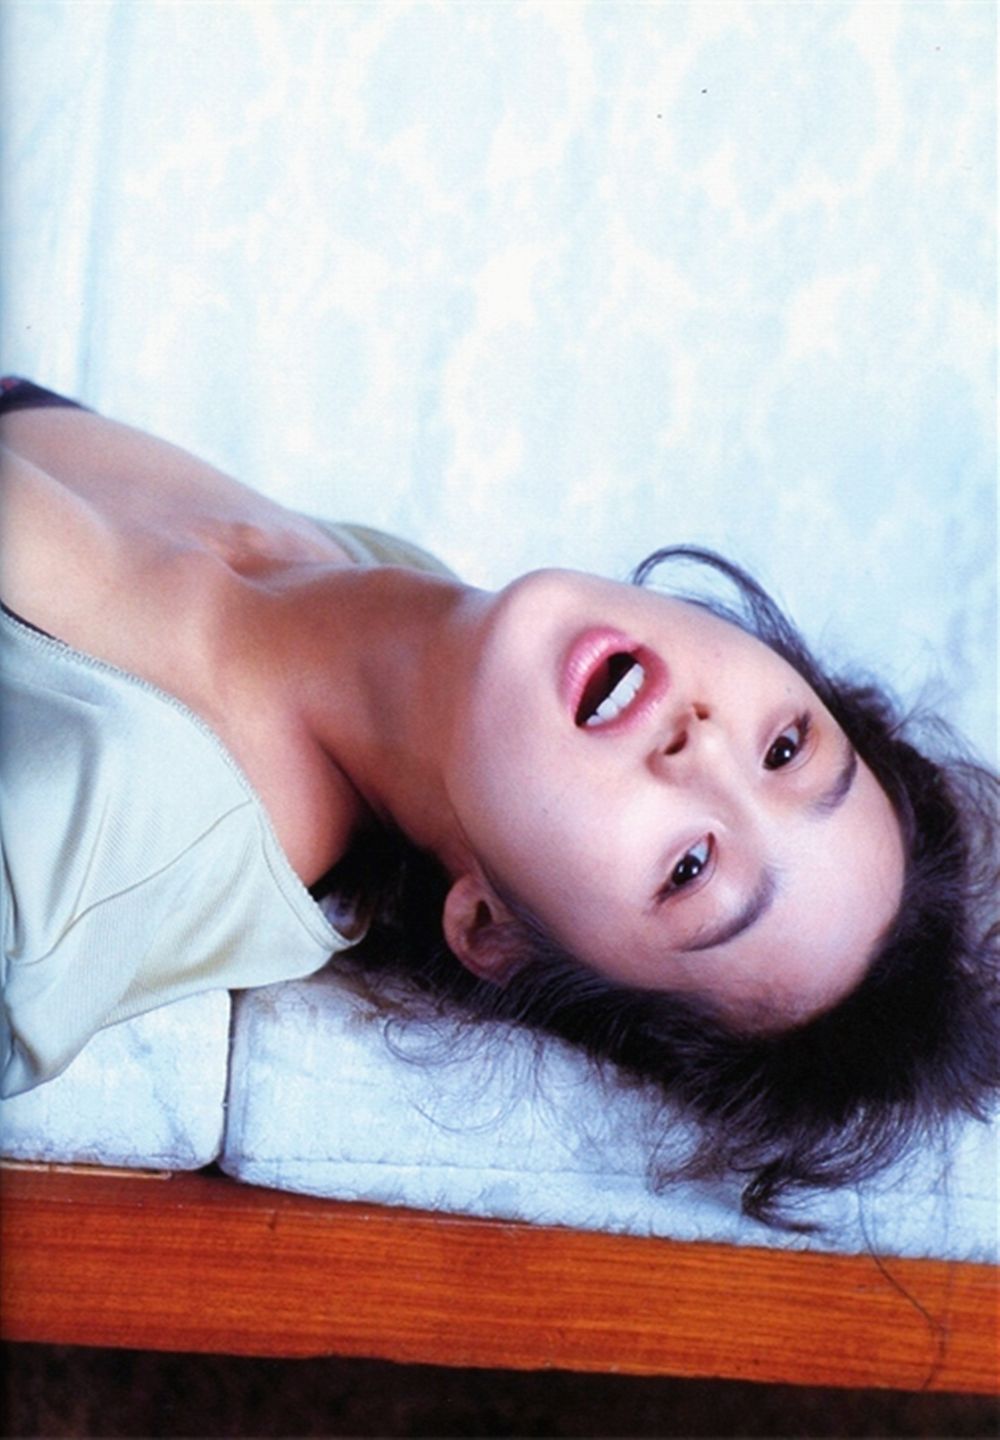 Sawako Kitahara Sexy and Hottest Photos , Latest Pics